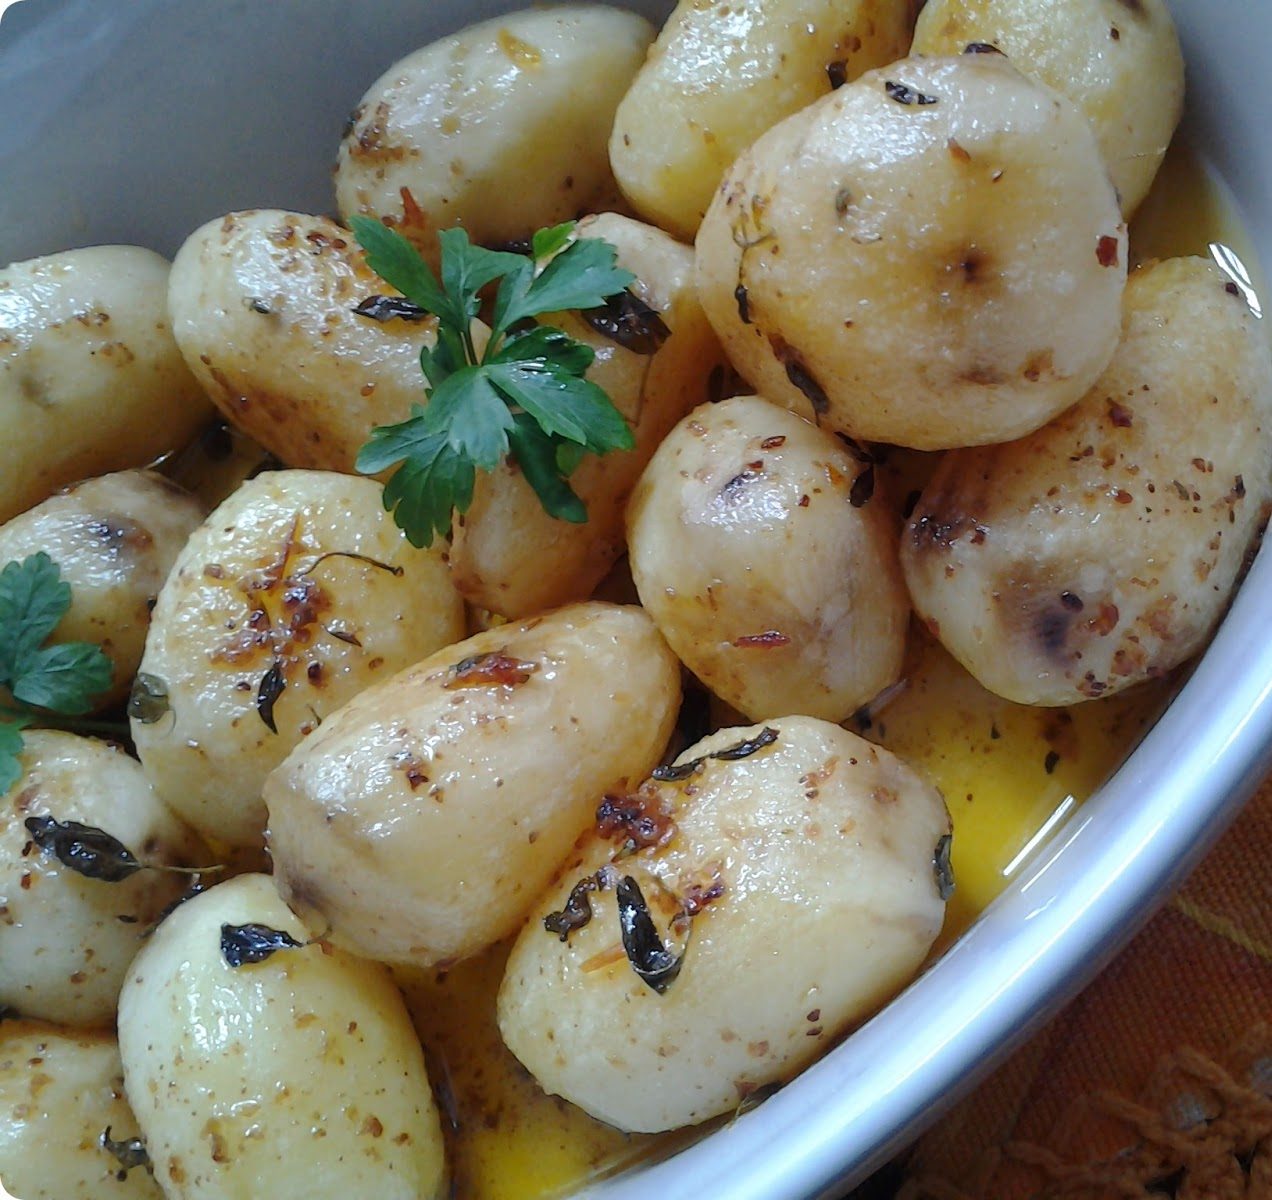 batatas assadas no forno